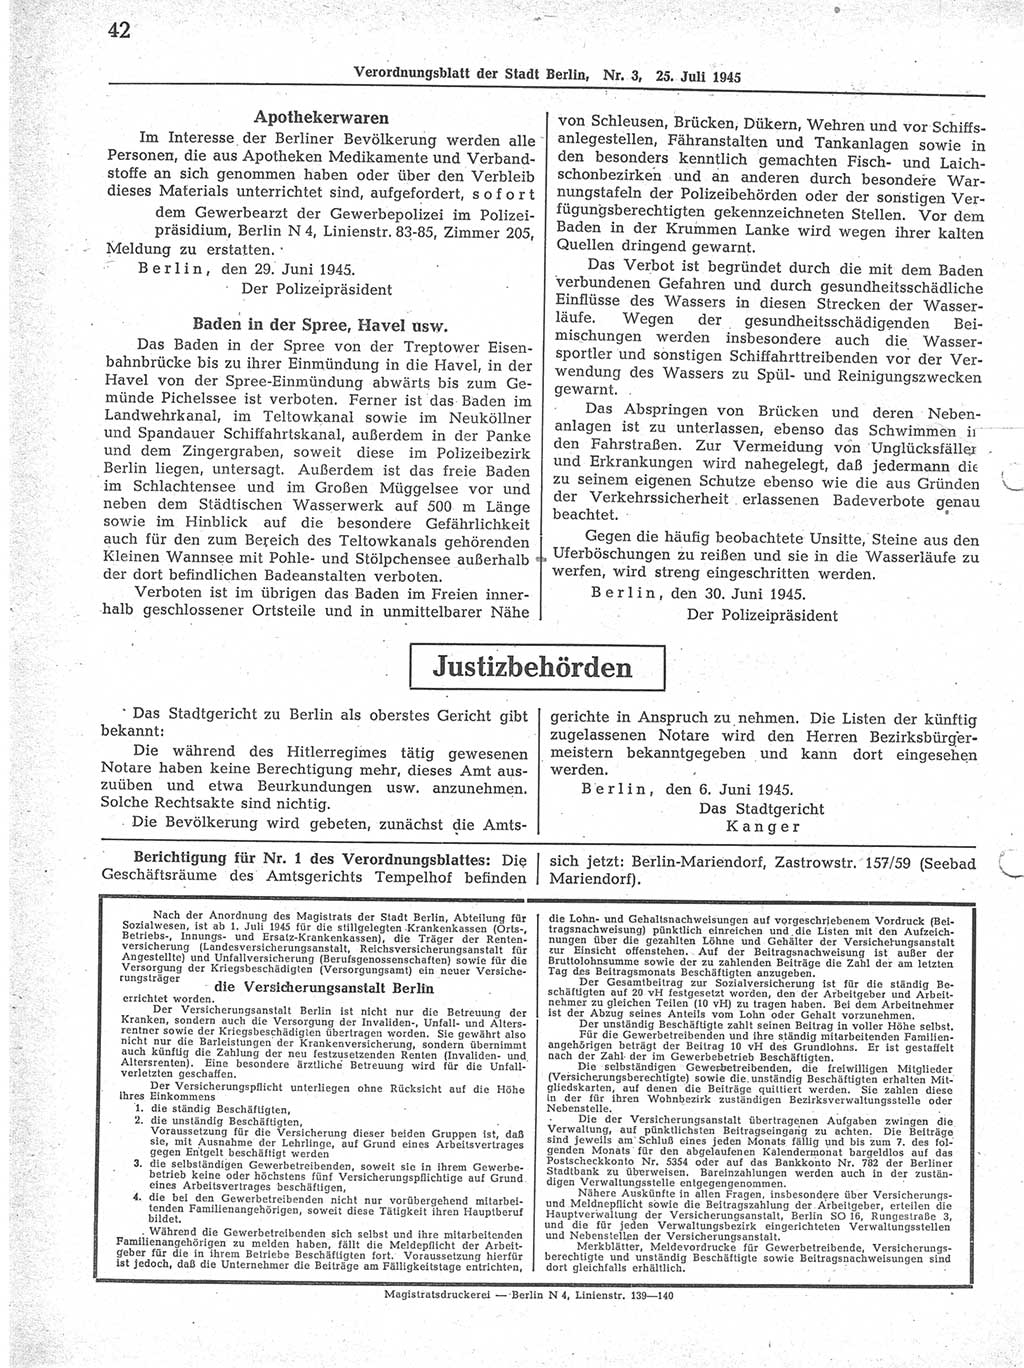 Verordnungsblatt (VOBl.) der Stadt Berlin 1945, Seite 42 (VOBl. Bln. 1945, S. 42)